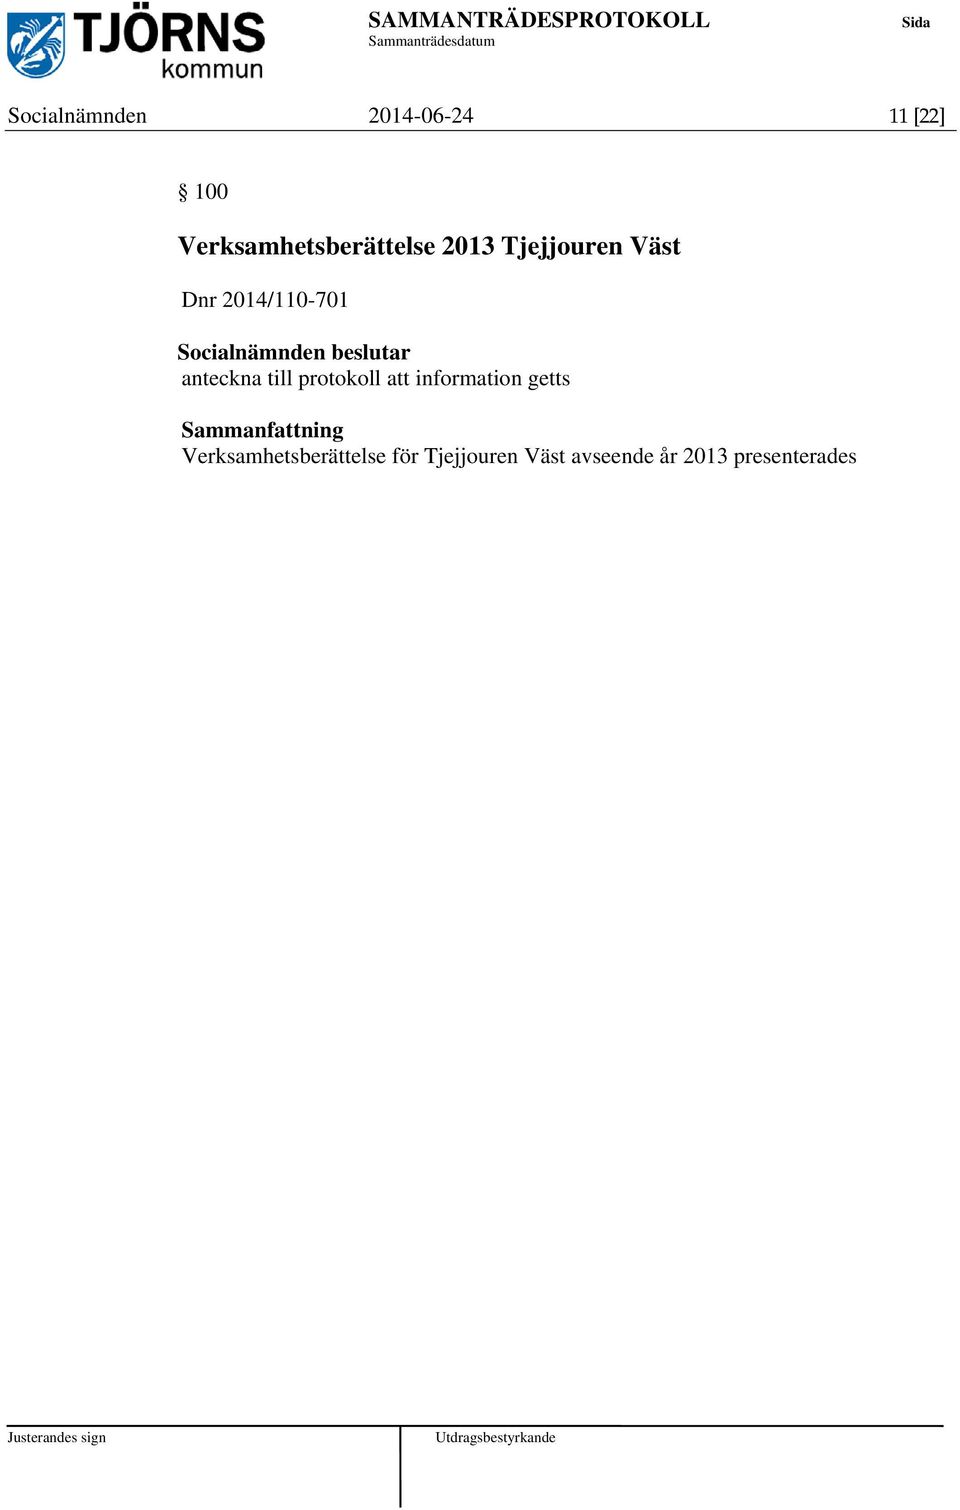 2014/110-701 anteckna till protokoll att information